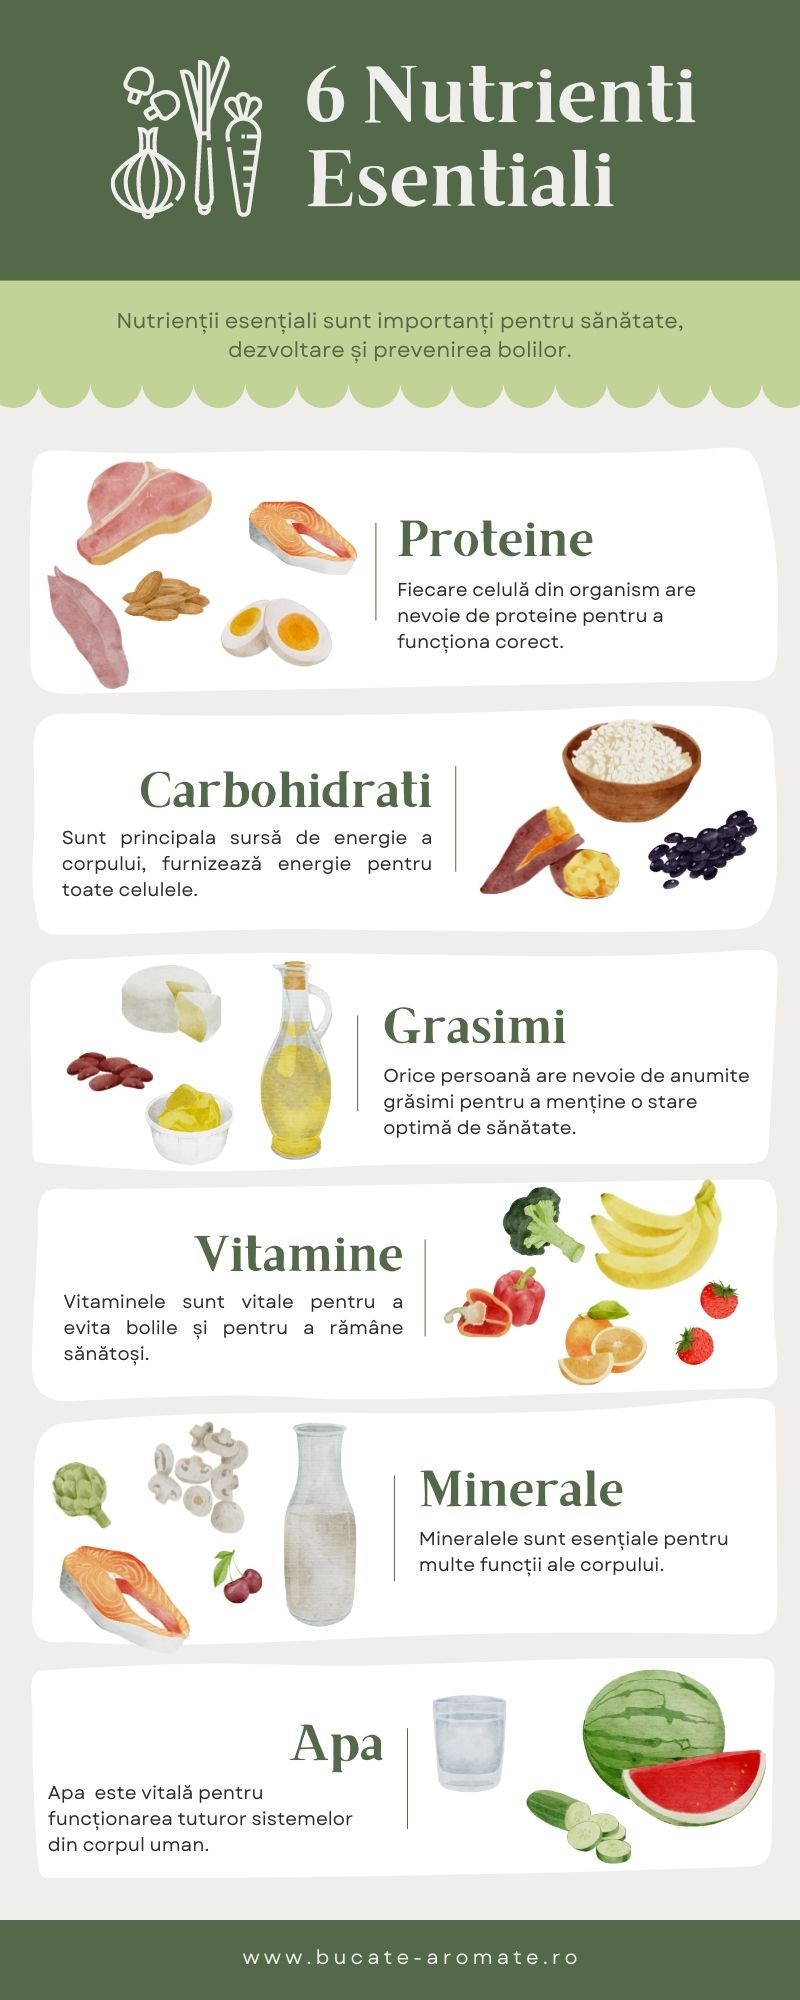 infografic cu cei 6 nutrienți esențiali pentru sănătatea organismului uman proteine, carbohidrați, grăsimi, vitamine, minerale, apa